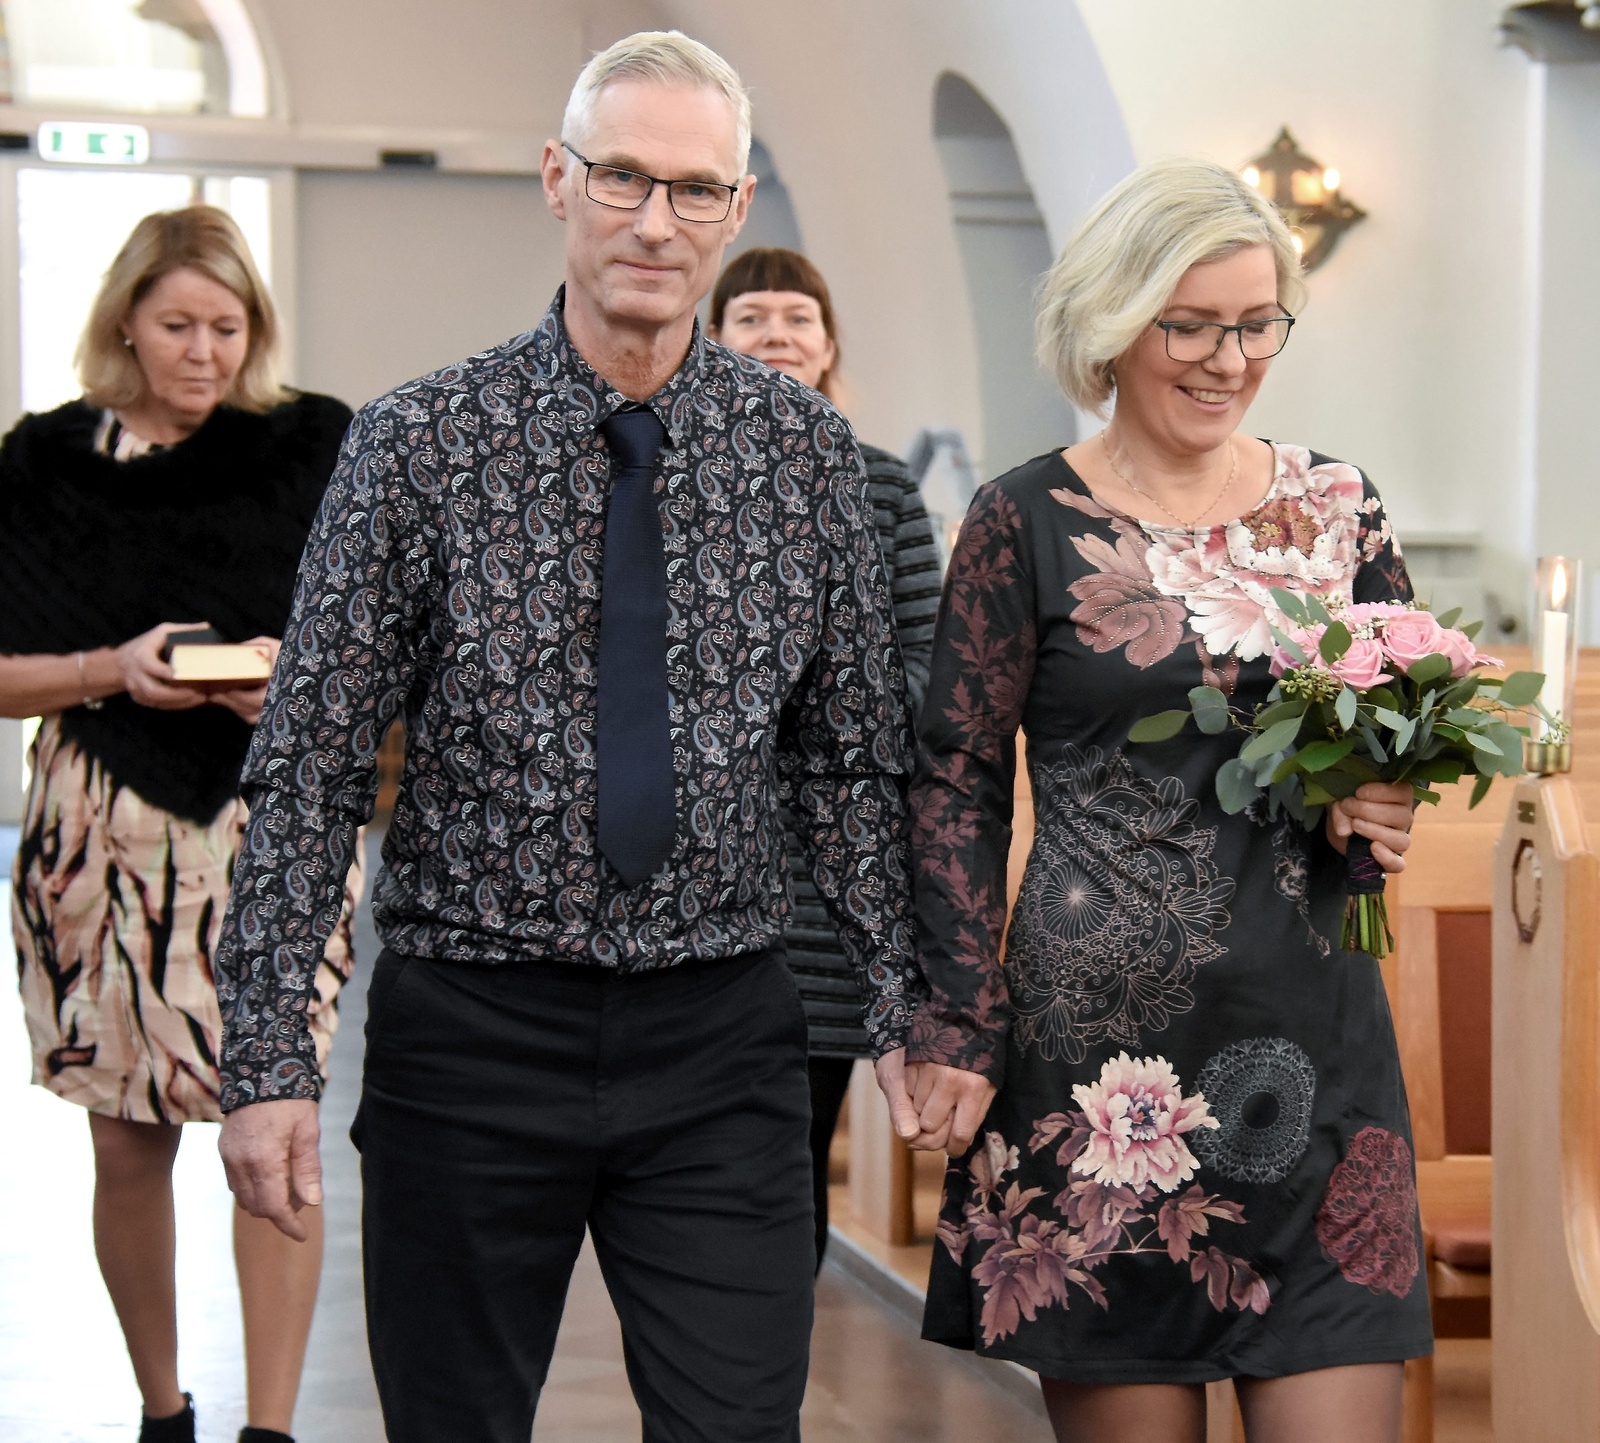 Drop in bröllop i Hässleholms kyrka. Malin Lierud och Göran Alderfalk gifter sig. Christina Liljegren är präst.